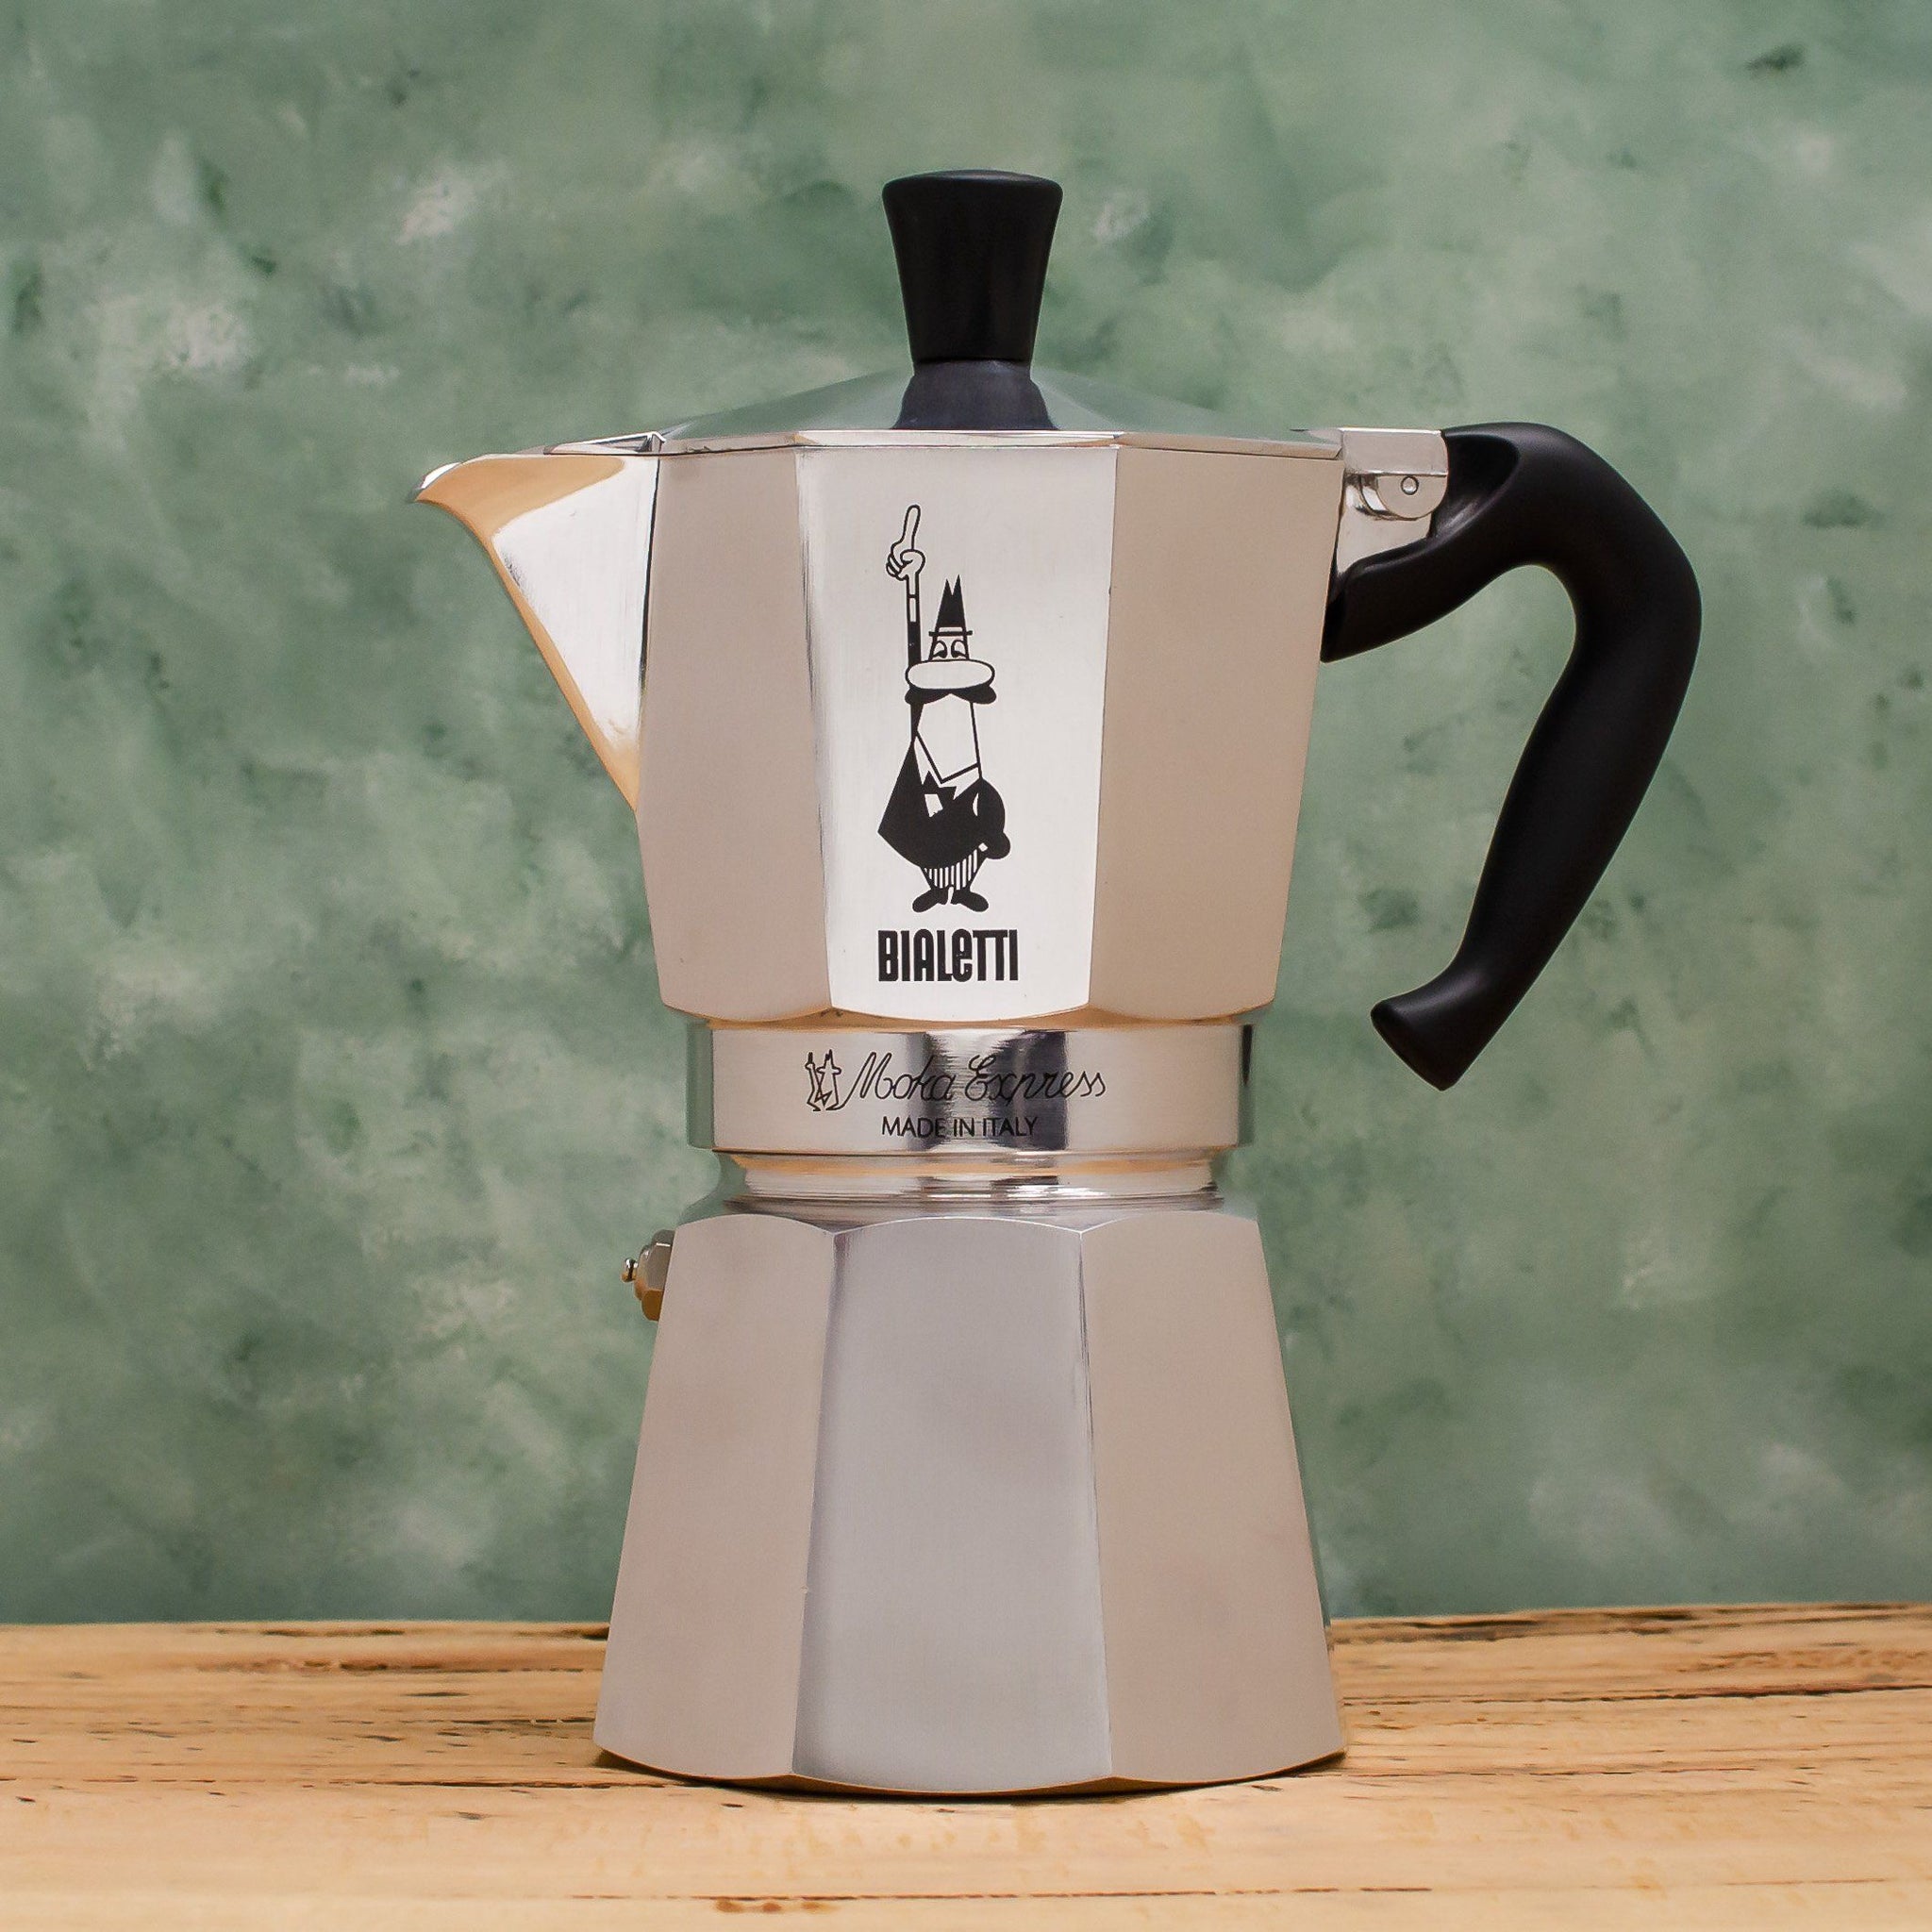 https://www.coffeacoffee.com.au/cdn/shop/products/Bialetti_Moka_Express_6_cup_1024x1024@2x.jpg?v=1613380996